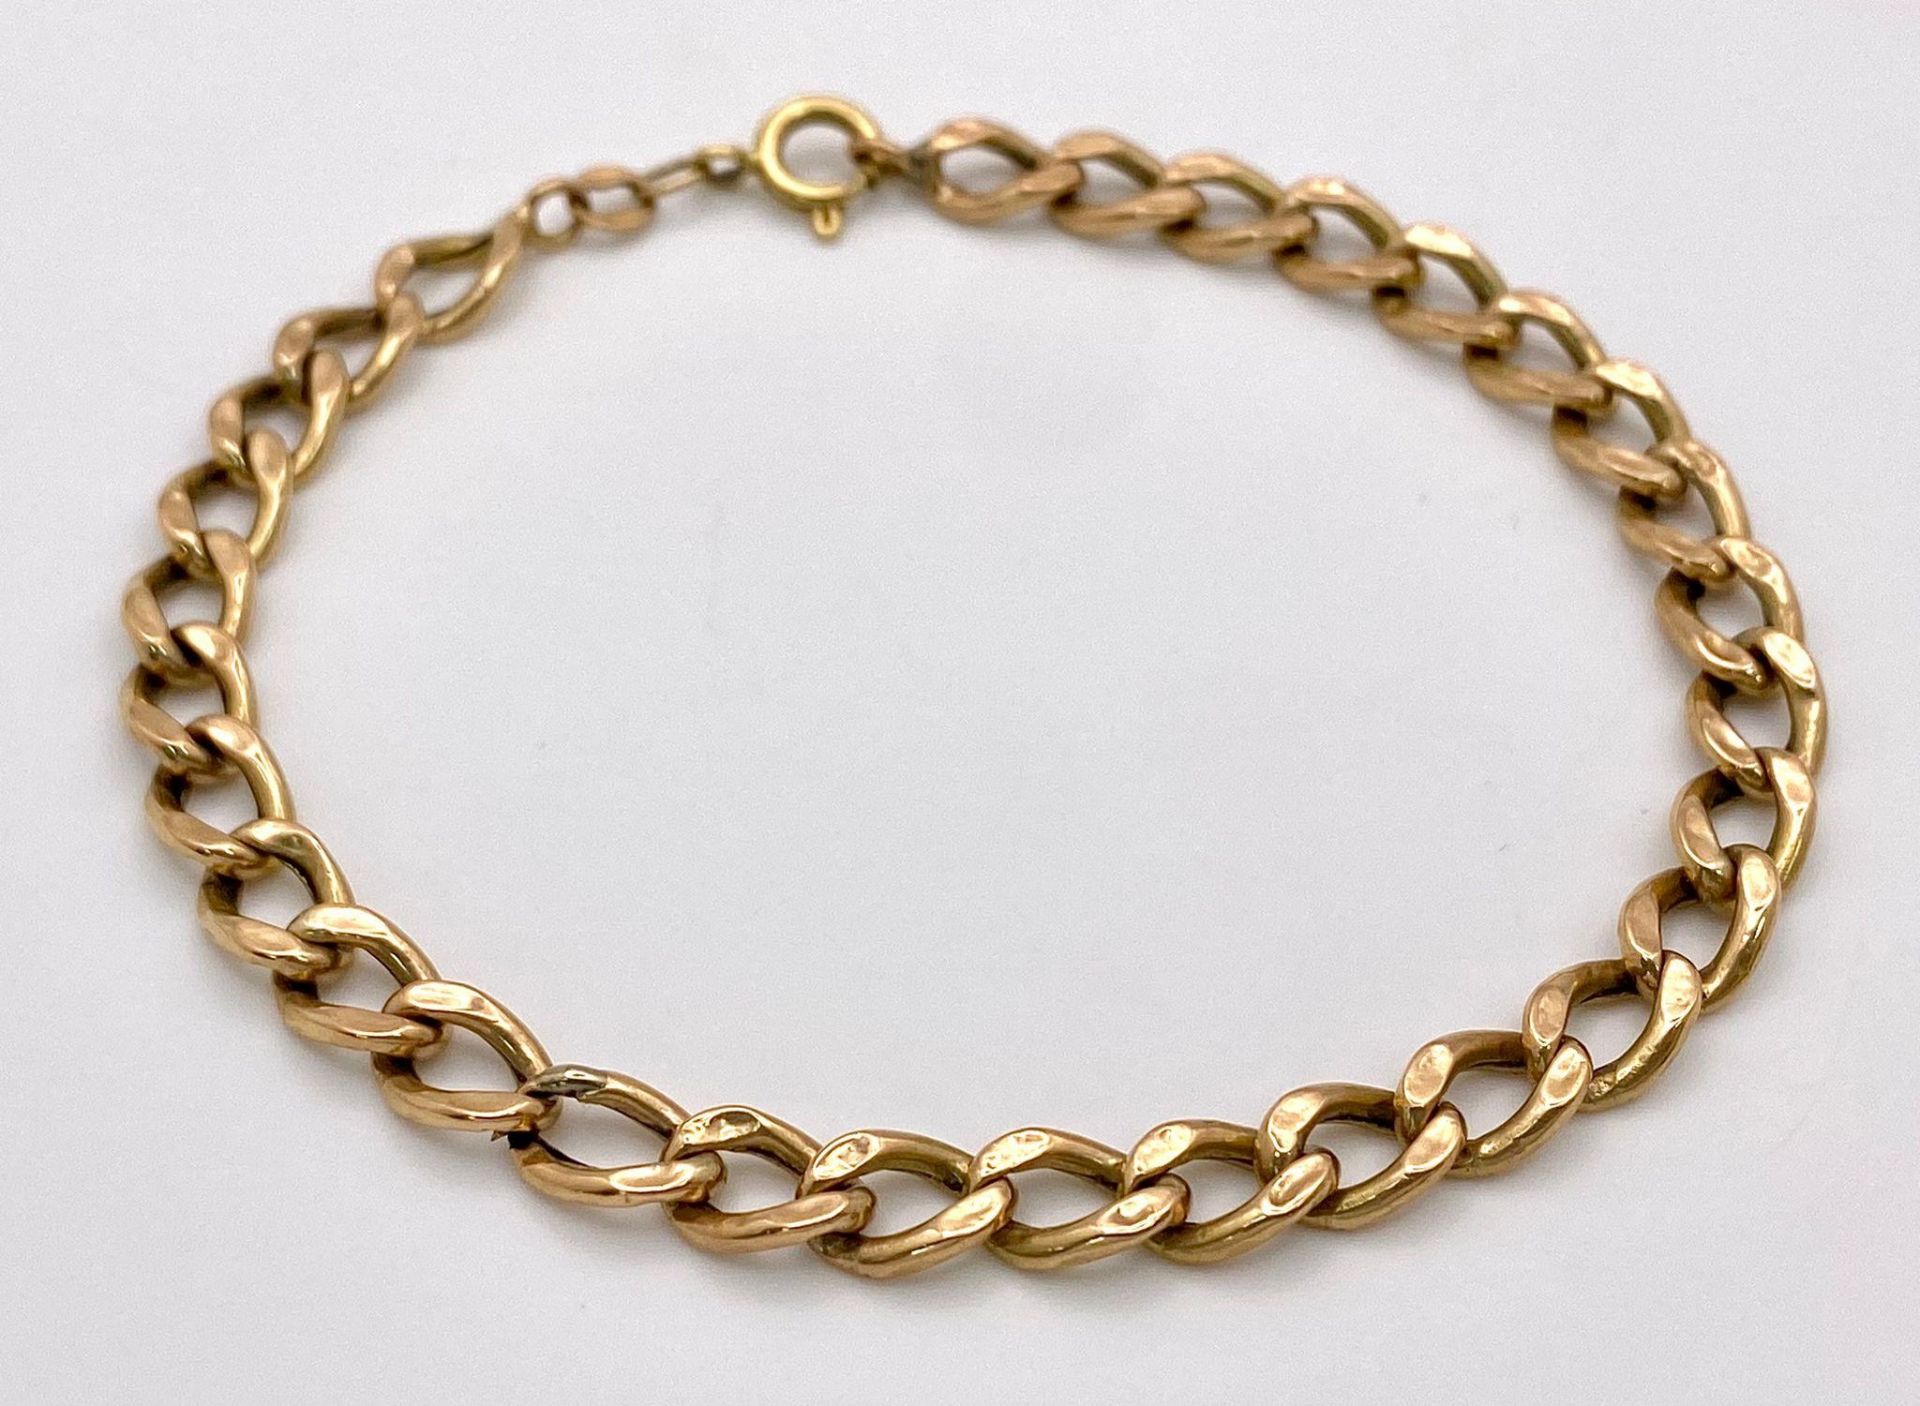 An 18K Yellow Gold Flat Curb Link Bracelet. 19cm. 4.25g weight.